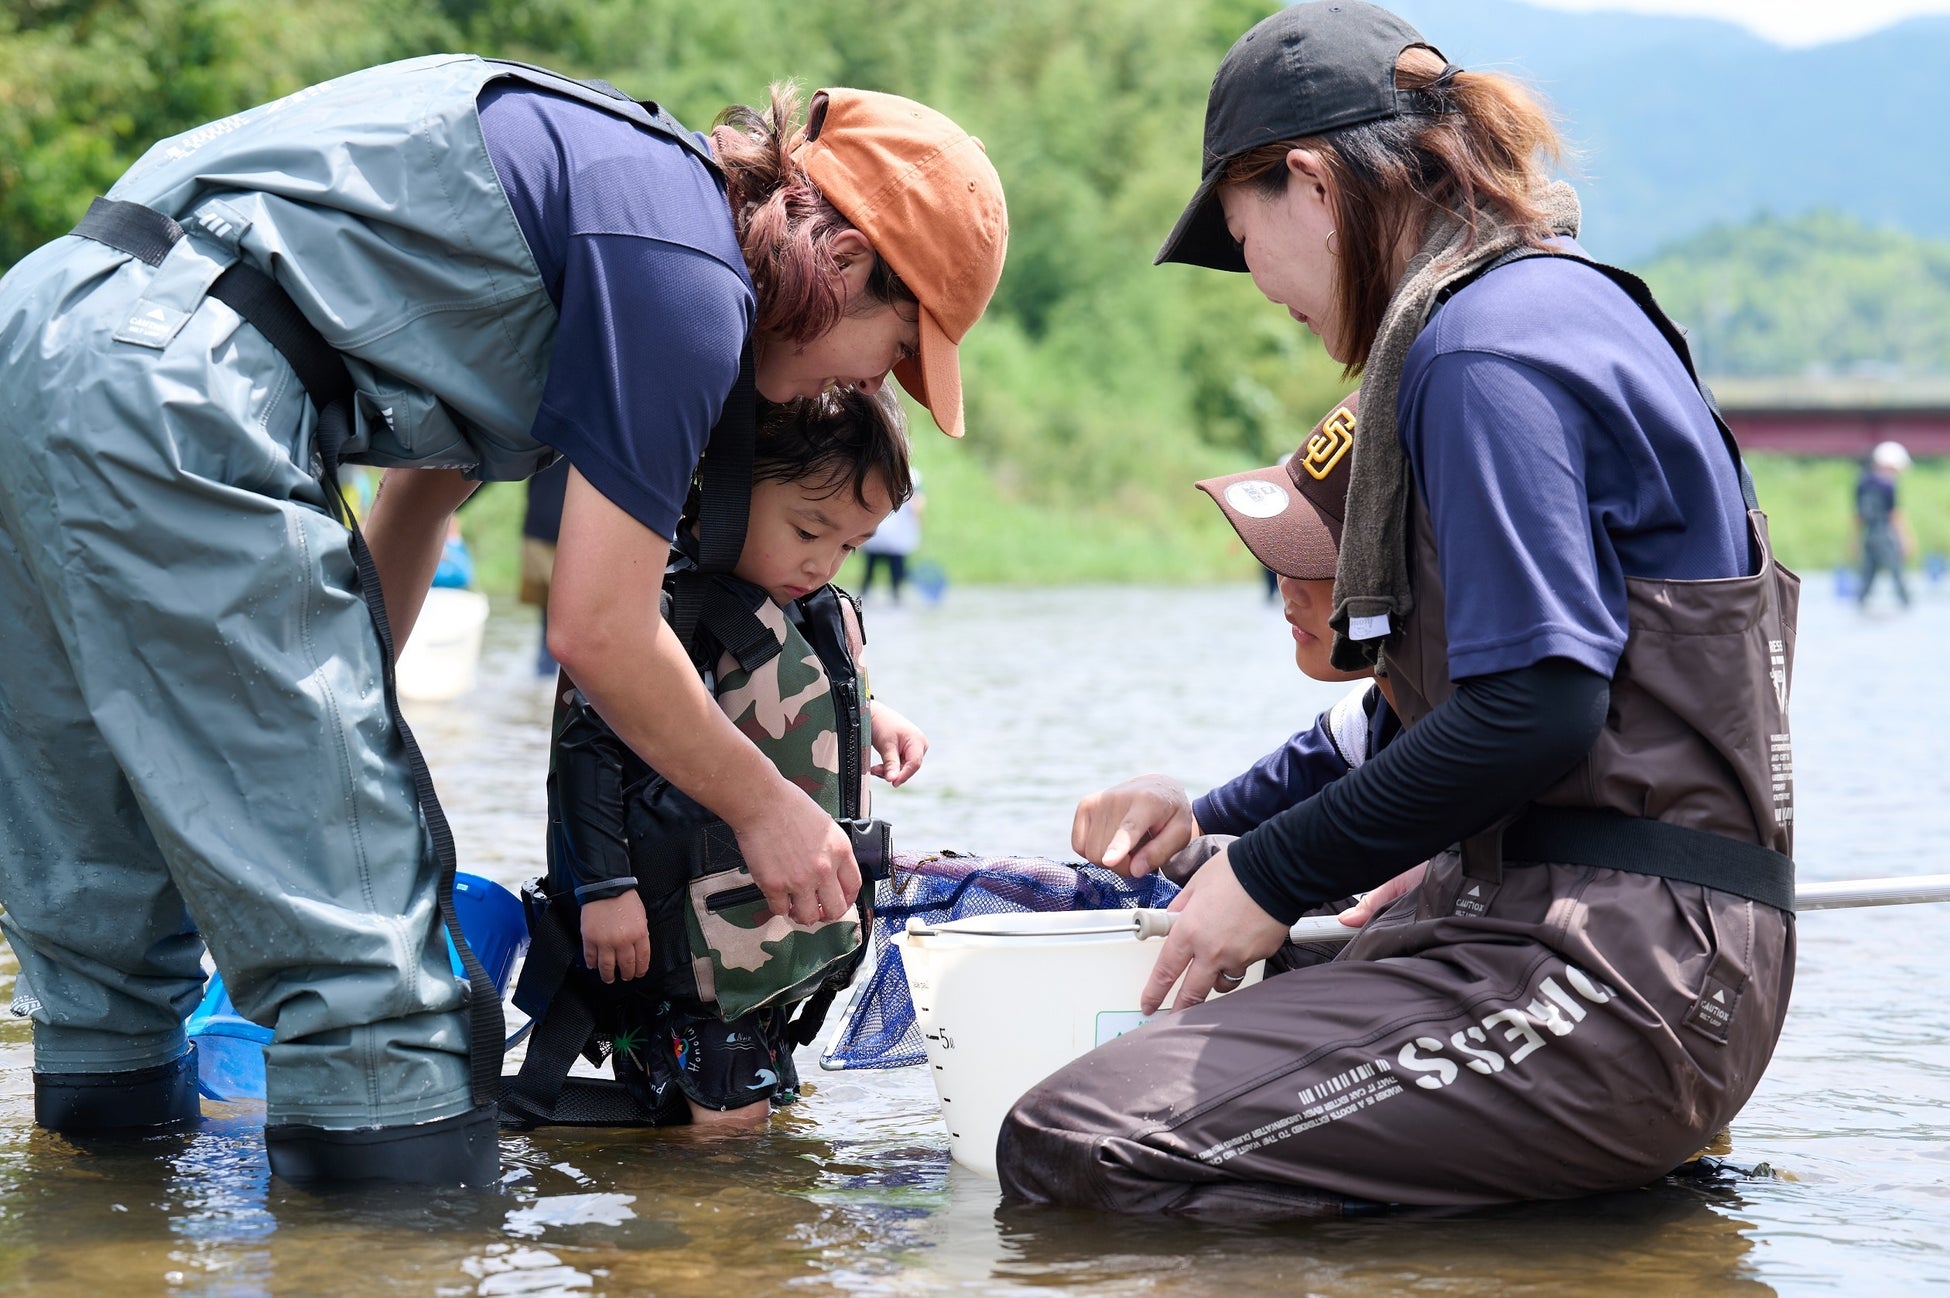 ミルボン×市民団体 魚と子どものネットワーク地域の子どもたちと川の環境保全を学ぶ体験学習「水質調査と水辺の自然観察会」第2回開催、67名が参加